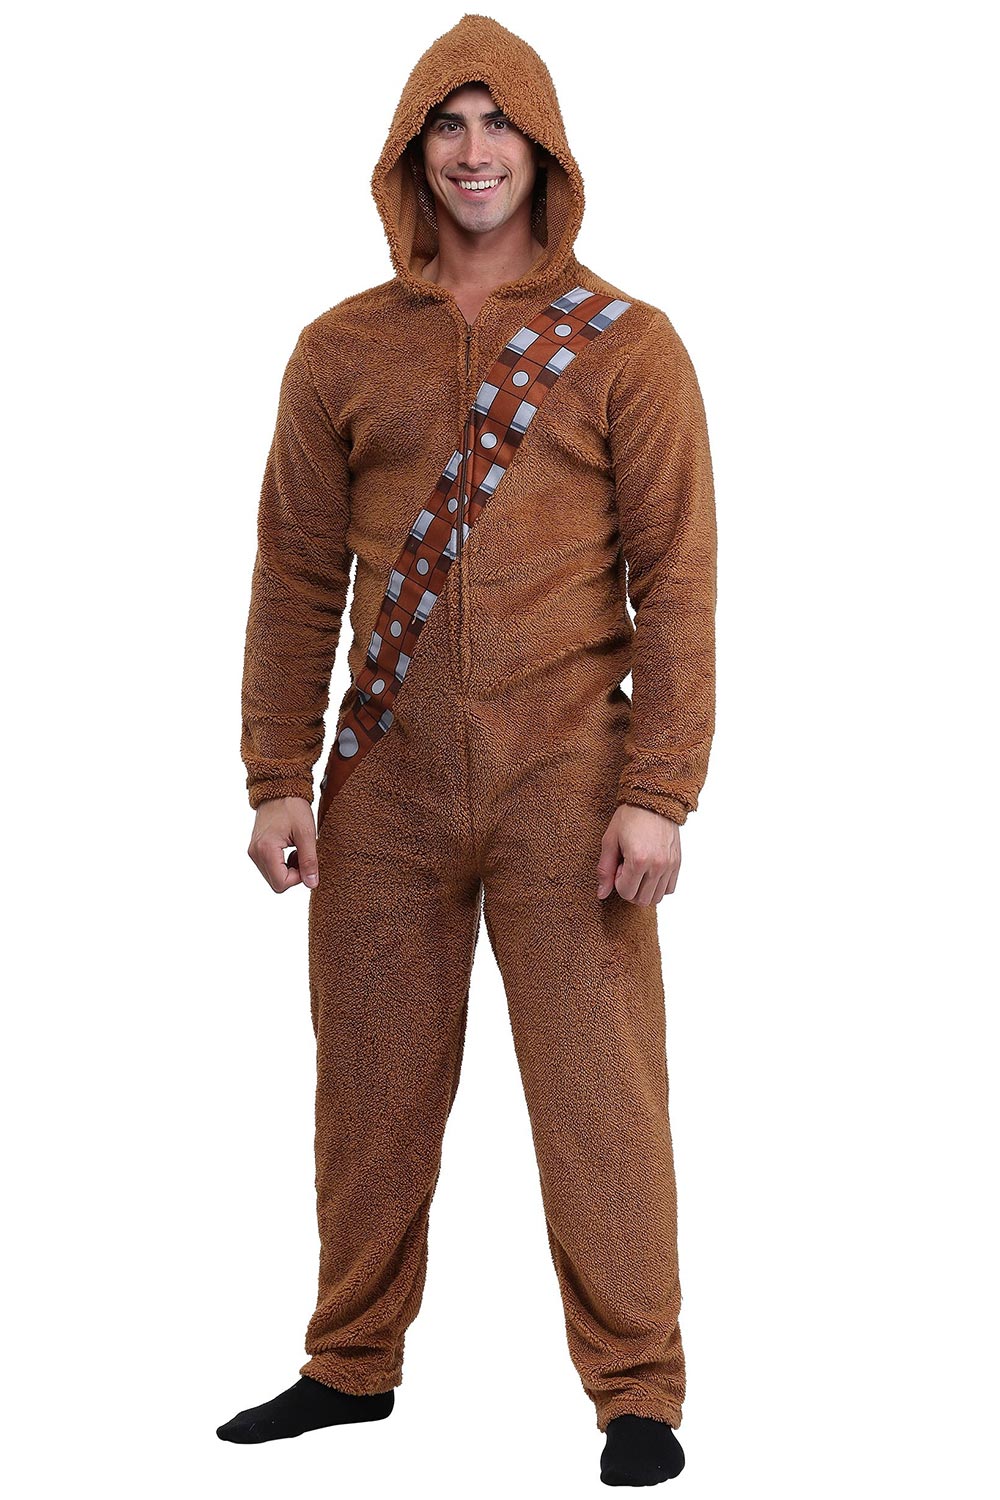 Star-Wars-Chewbacca-Adult-Hooded-Onesie.jpg